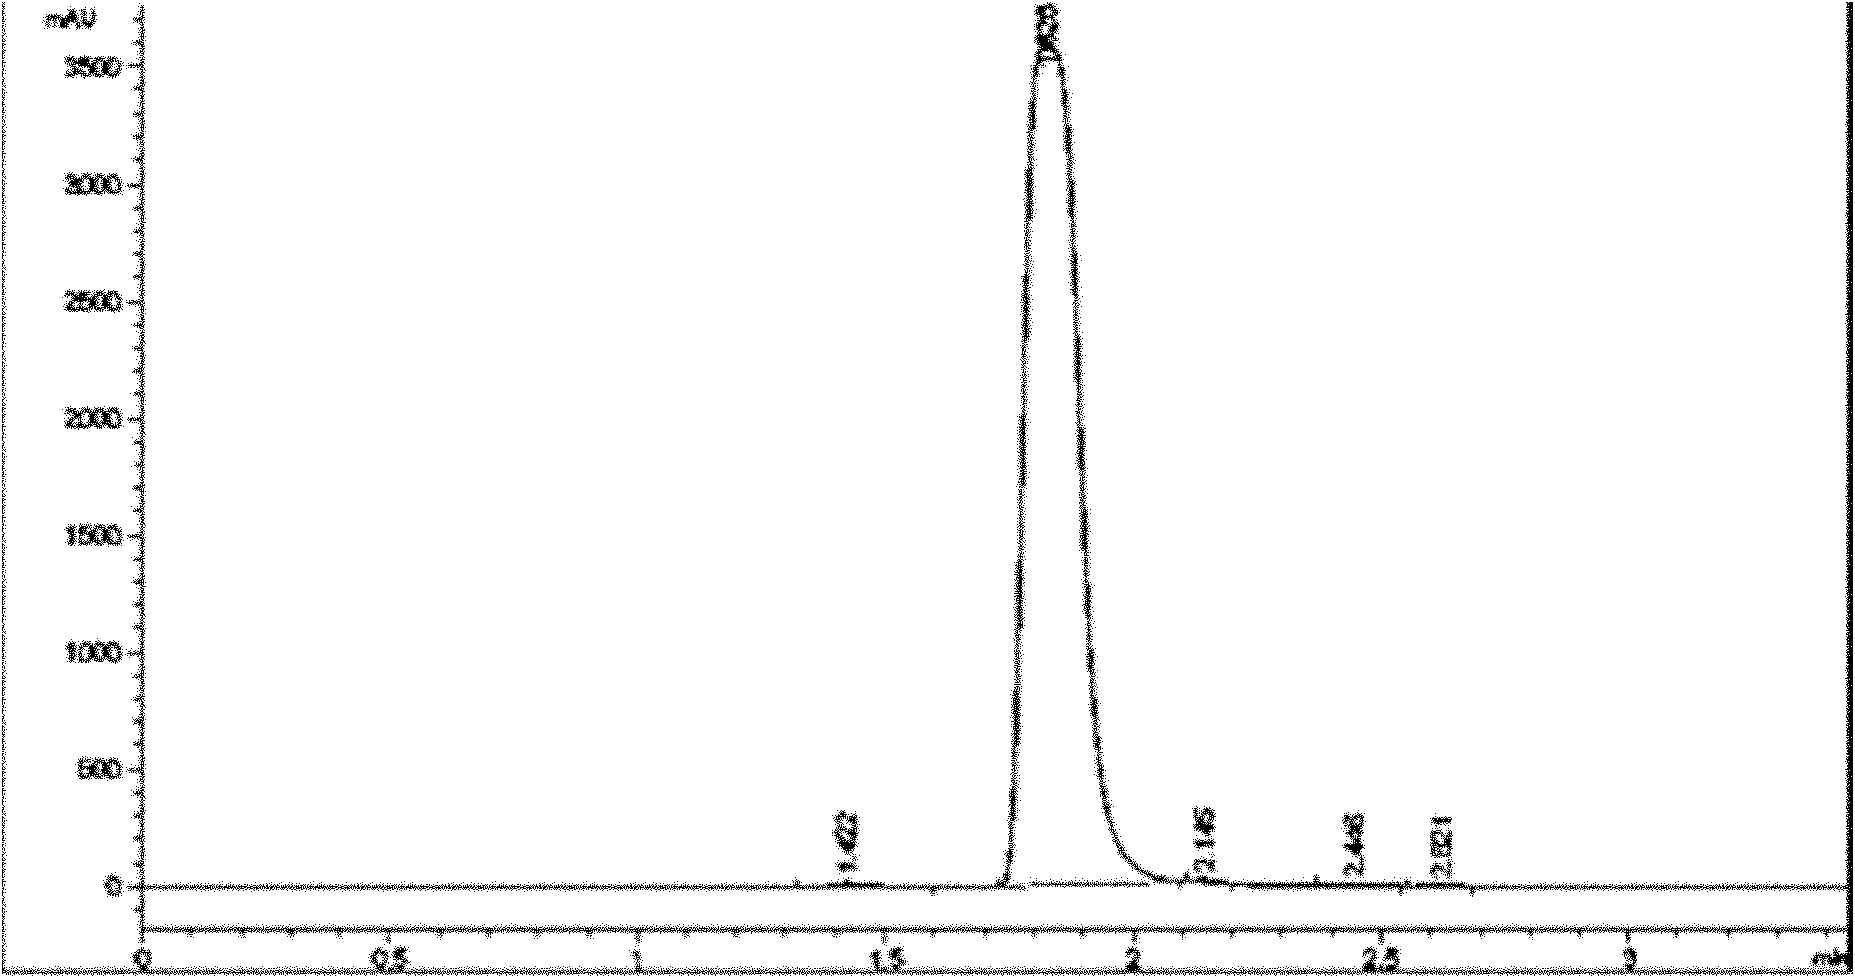 Method for synthesizing formoononetin